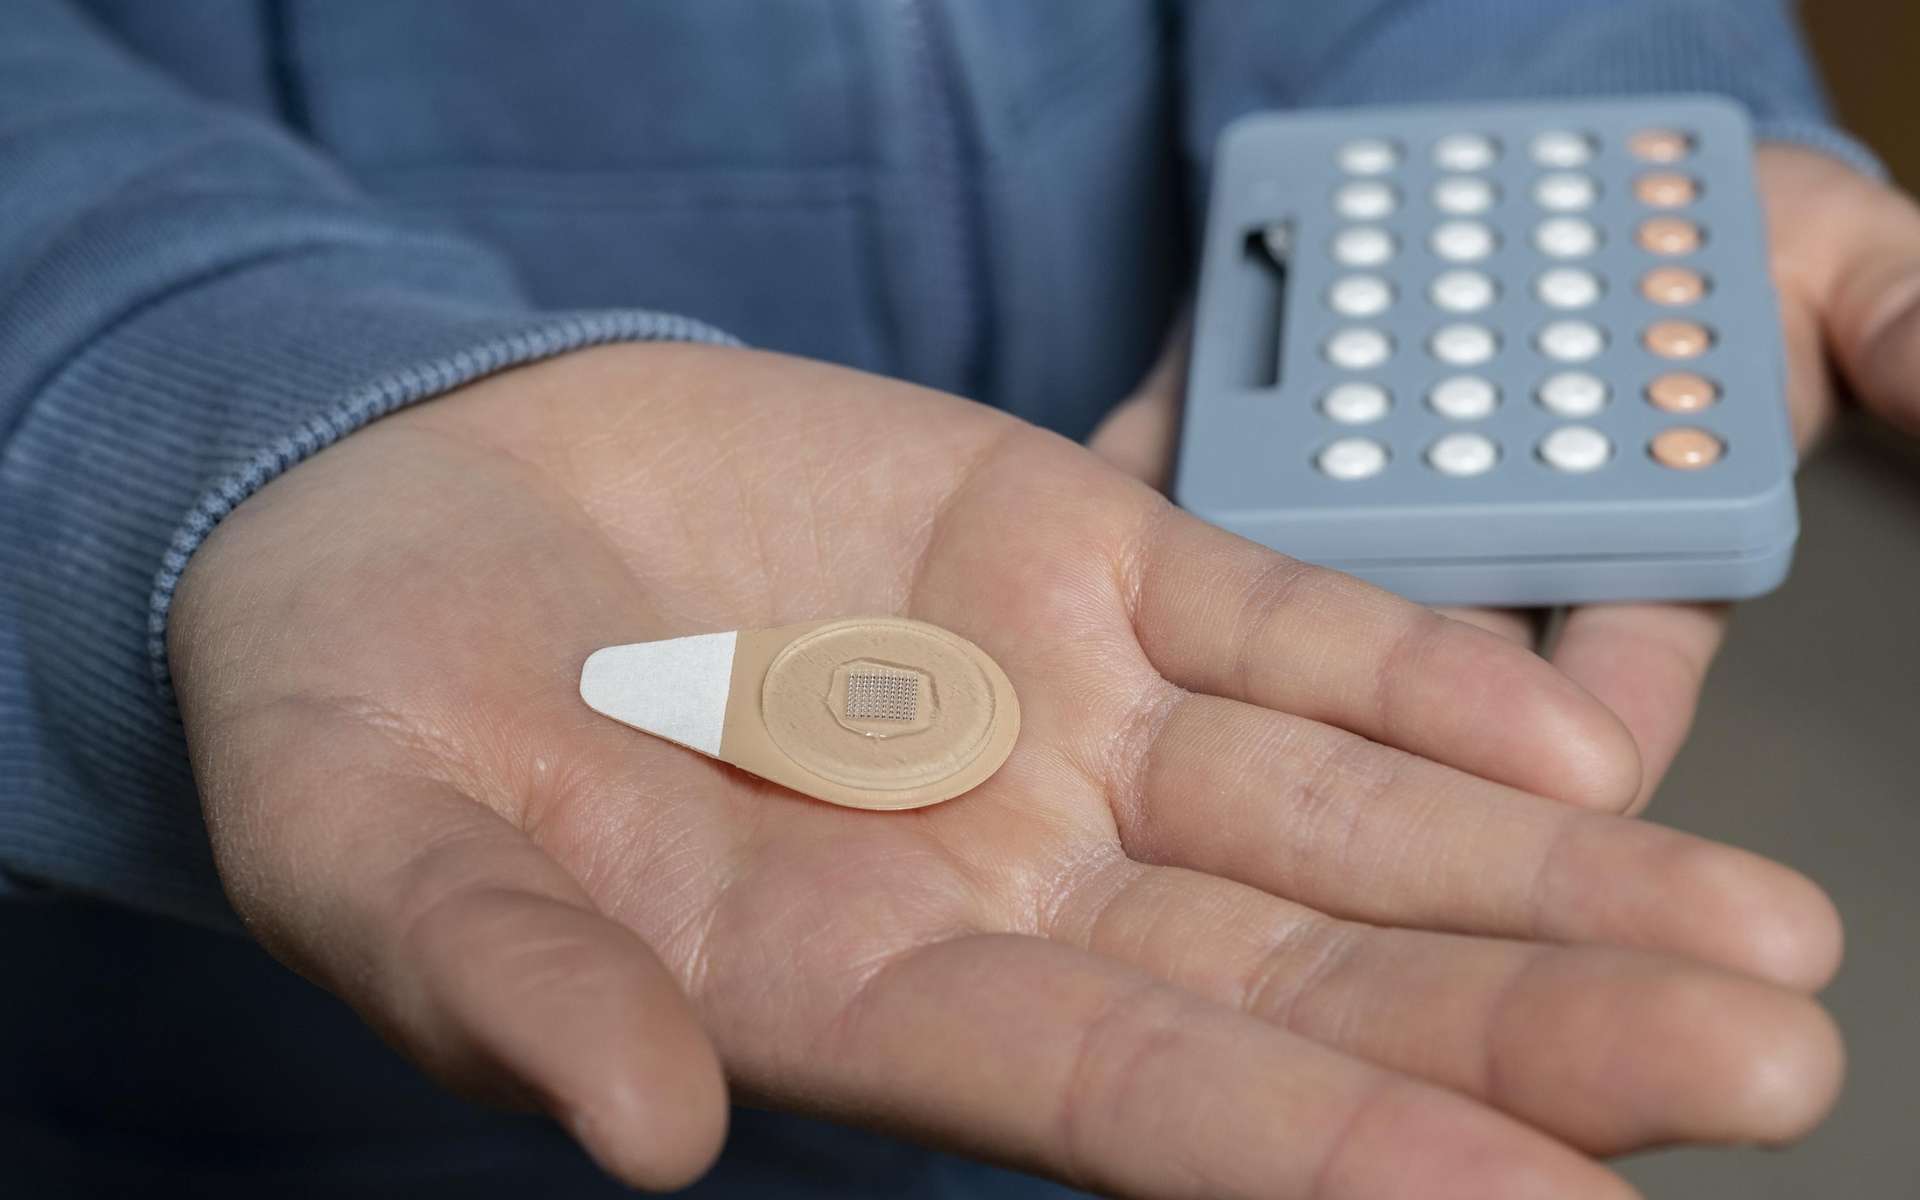 Ce patch expérimental pourrait remplacer la pilule contraceptive. © Christopher Moore, Georgia Tech